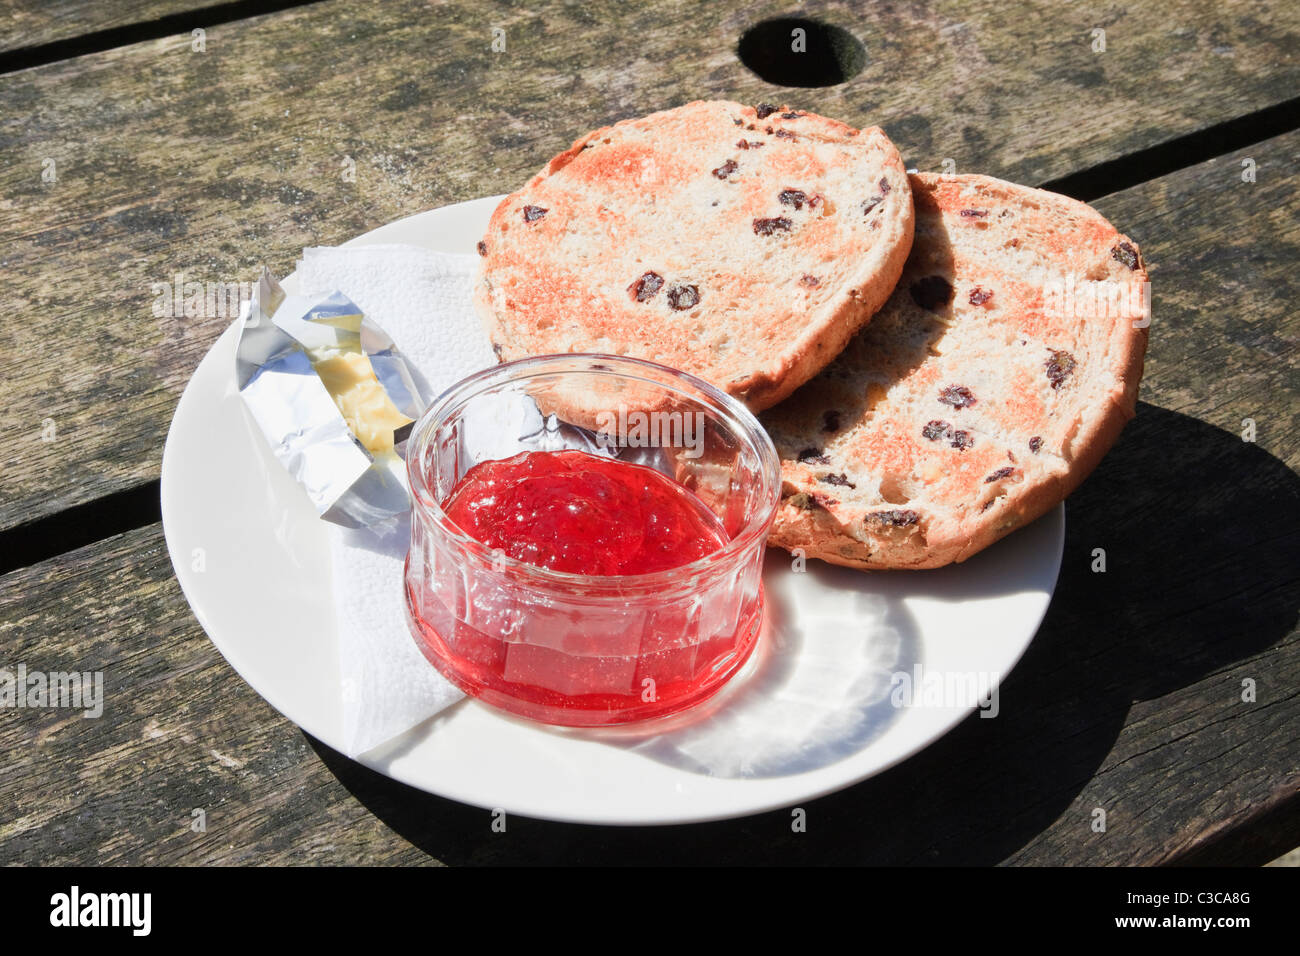 Teacake with grillé sur une plaque avec du beurre et un pot de confiture sur une table en bois rustique. Angleterre Royaume-uni Grande-Bretagne Banque D'Images